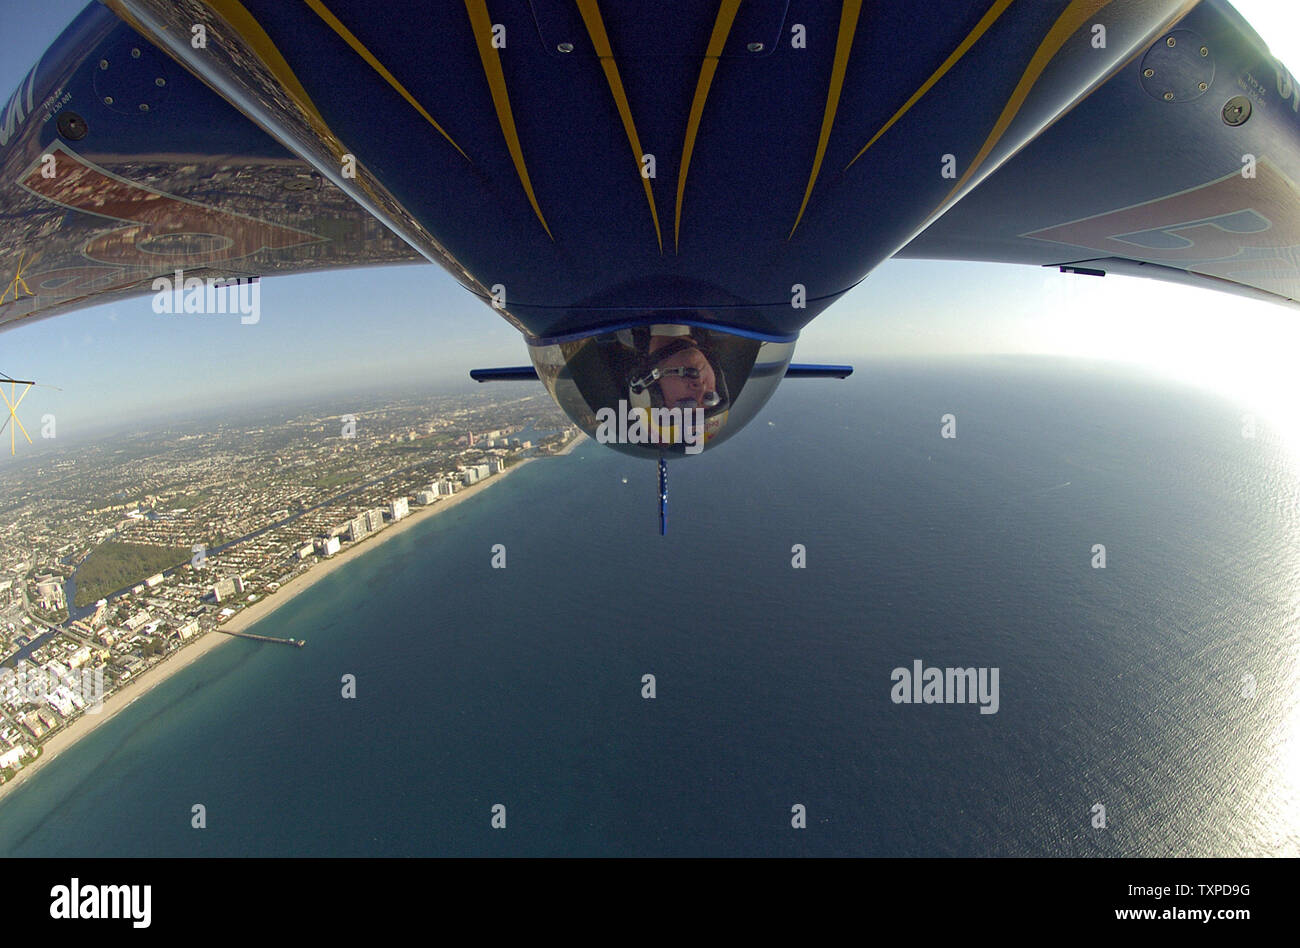 Kirby Chambliss, battant le Red Bull 'edge' pratiques dans le ciel au-dessus des plages près de Ft. Lauderdale le 28 avril 2005. Chambliss participera au McDonalds Air et Mer Show, prévu pour le 30 avril et 1er mai 2005. (Photo d'UPI/marin/Cantrell) Banque D'Images